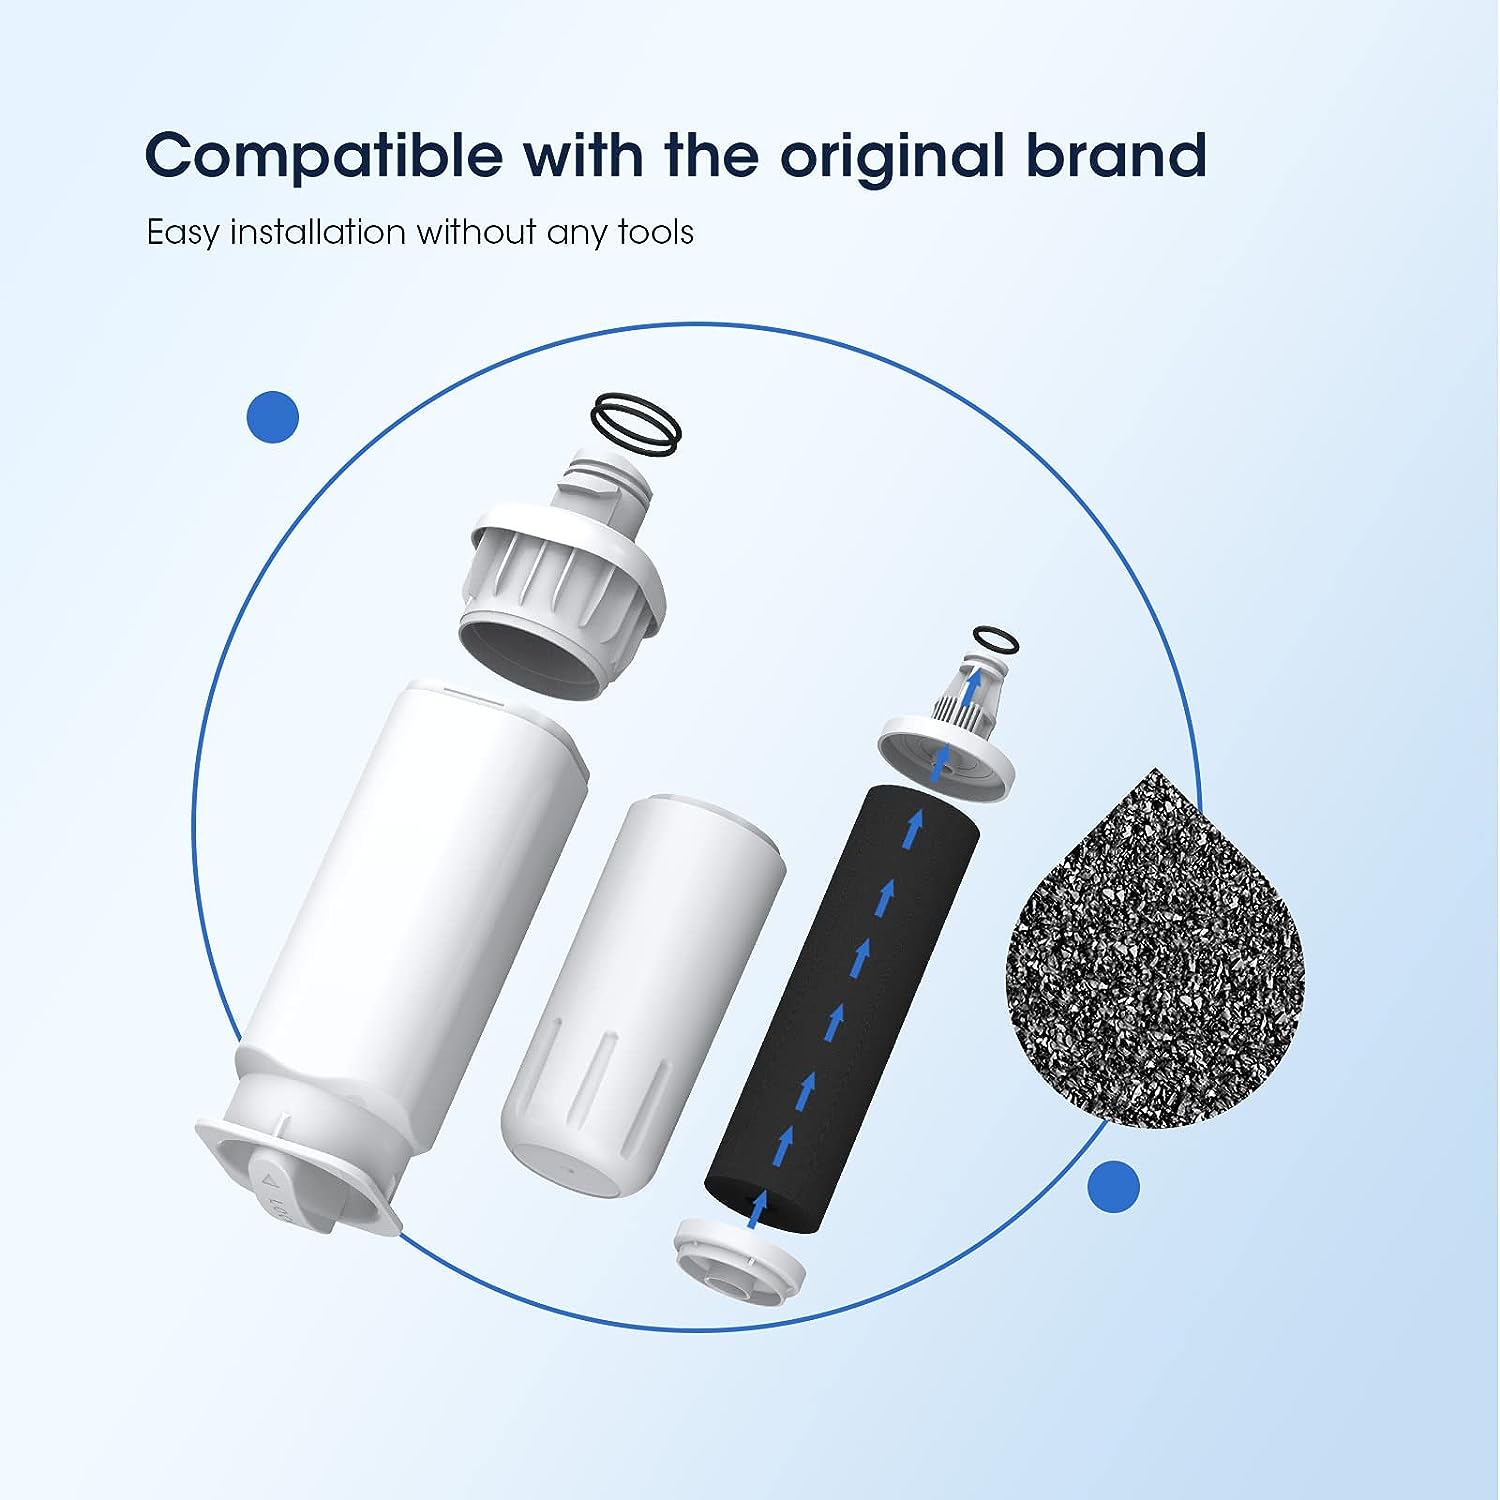 Glacier Fresh Kompatibel mit Samsung HAF-QIN, HAF-QIN/EXP Kühlschrank-Wasserfilter, 3er-Pack 